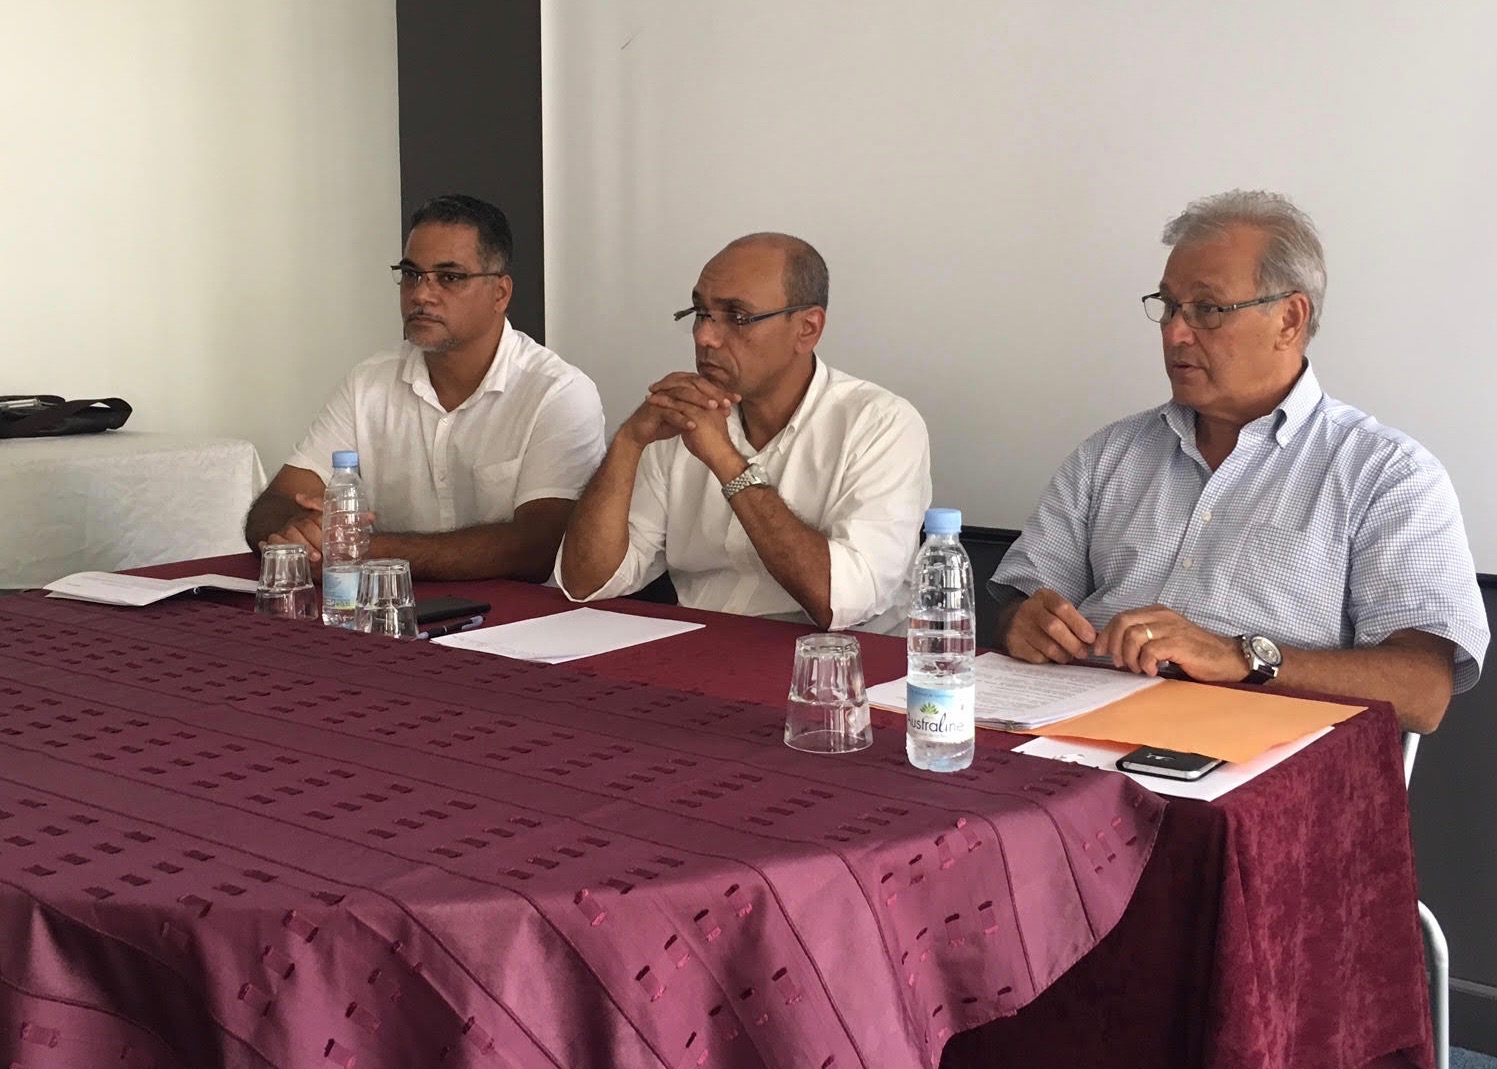 PCR: "Les Réunionnais doivent assumer eux-mêmes la responsabilité de leur pays"